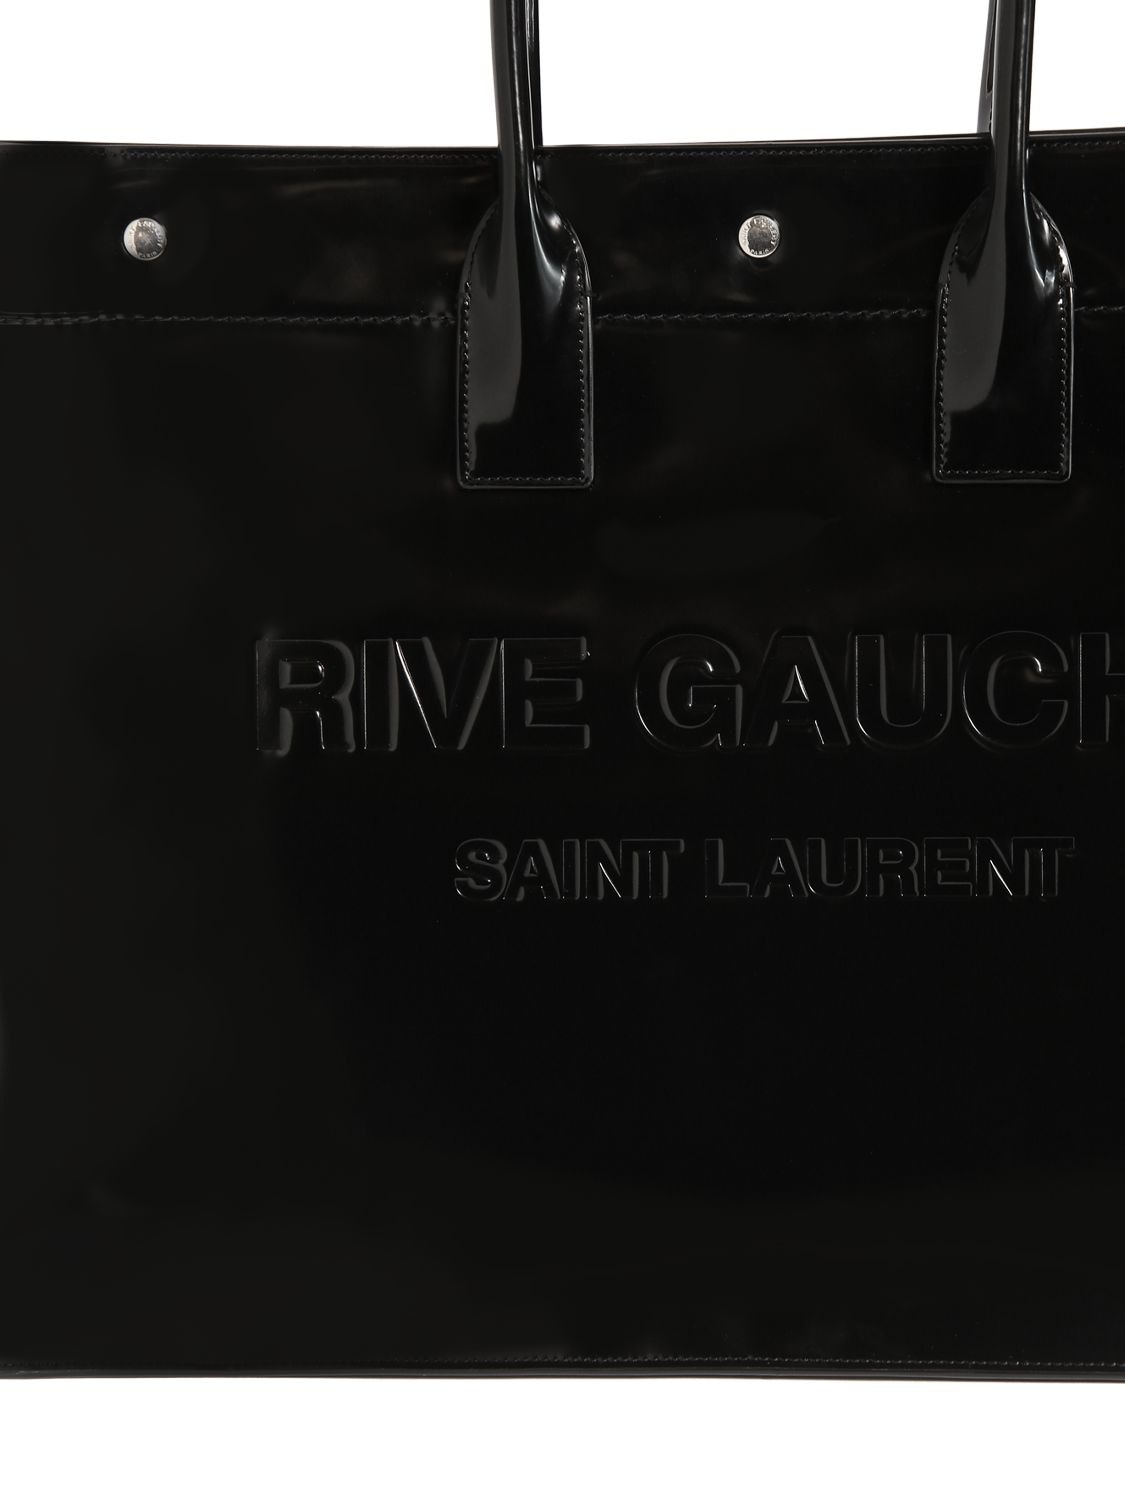 Saint Laurent Men's Rive Gauche Leather Tote Bag - Black - Totes